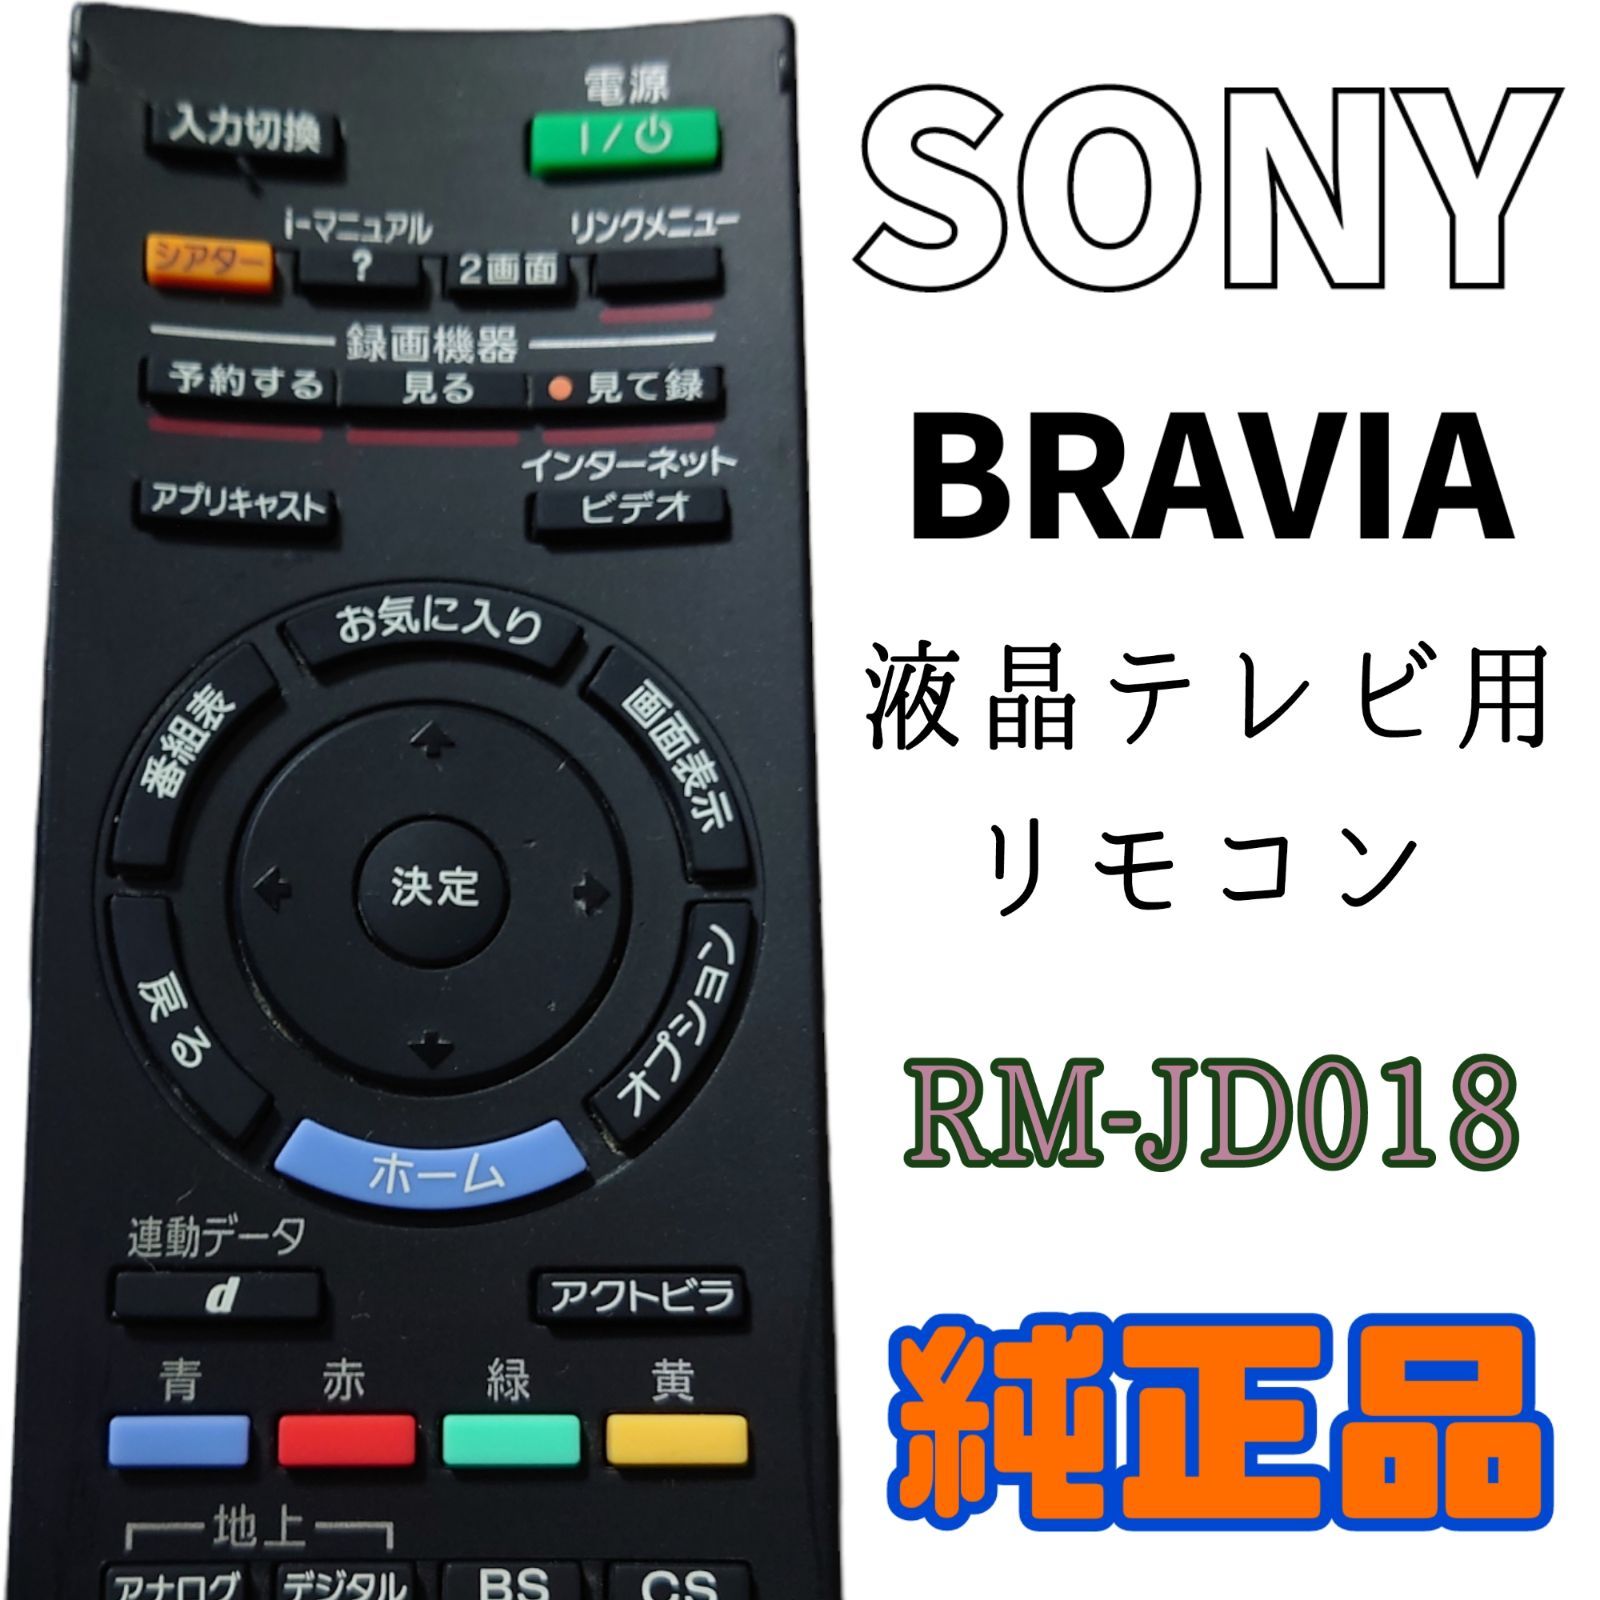 SONY RM-JD018 R ジャンク品 ブラビア用 - エアコン